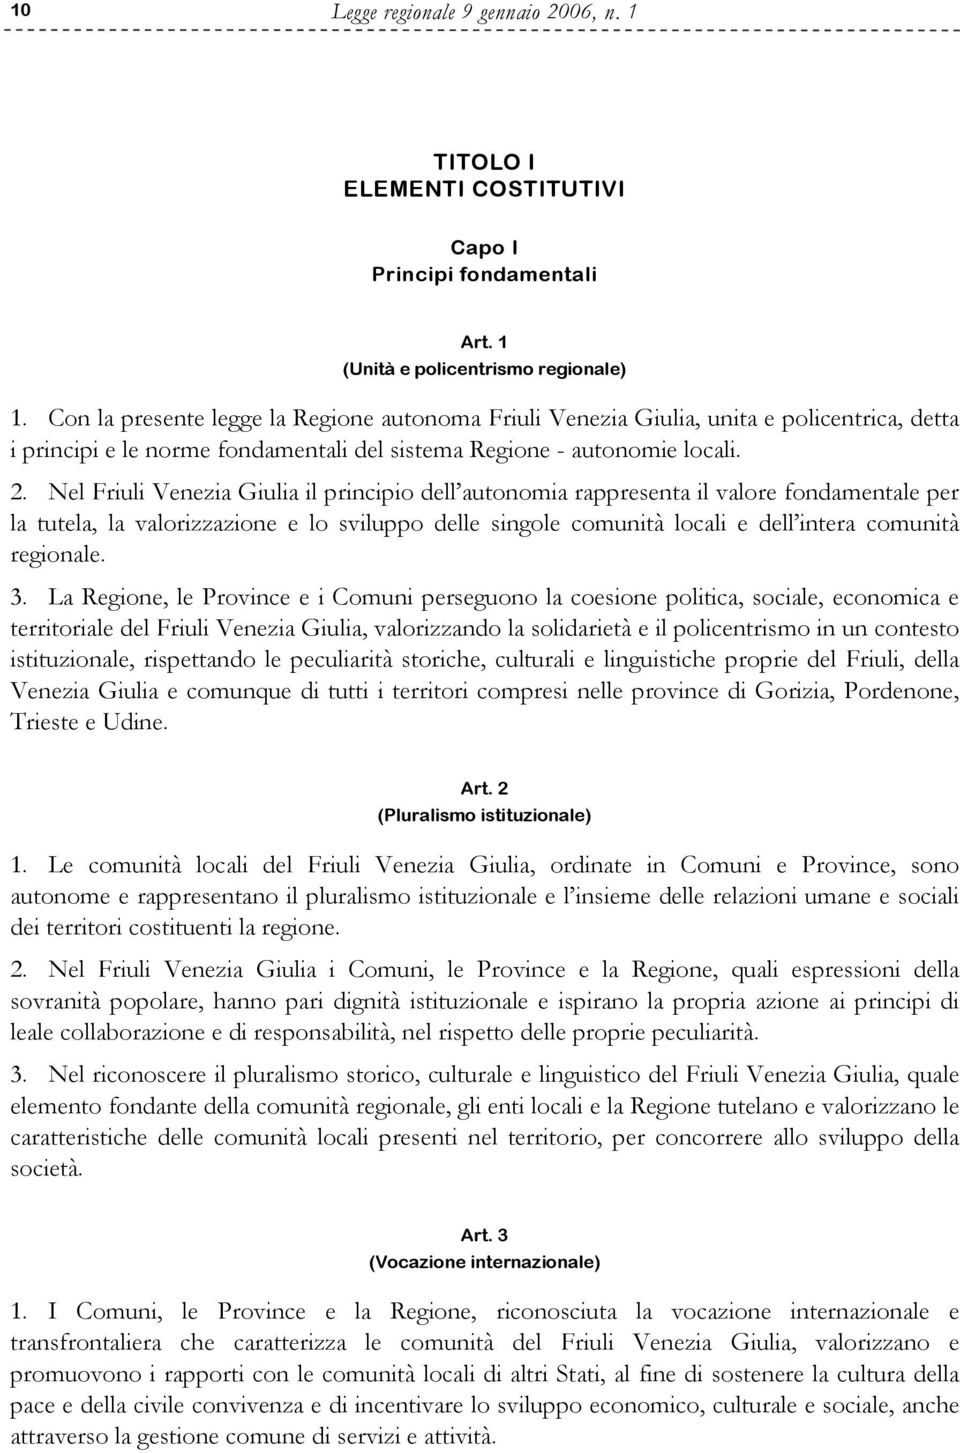 Nel Friuli Venezia Giulia il principio dell autonomia rappresenta il valore fondamentale per la tutela, la valorizzazione e lo sviluppo delle singole comunità locali e dell intera comunità regionale.